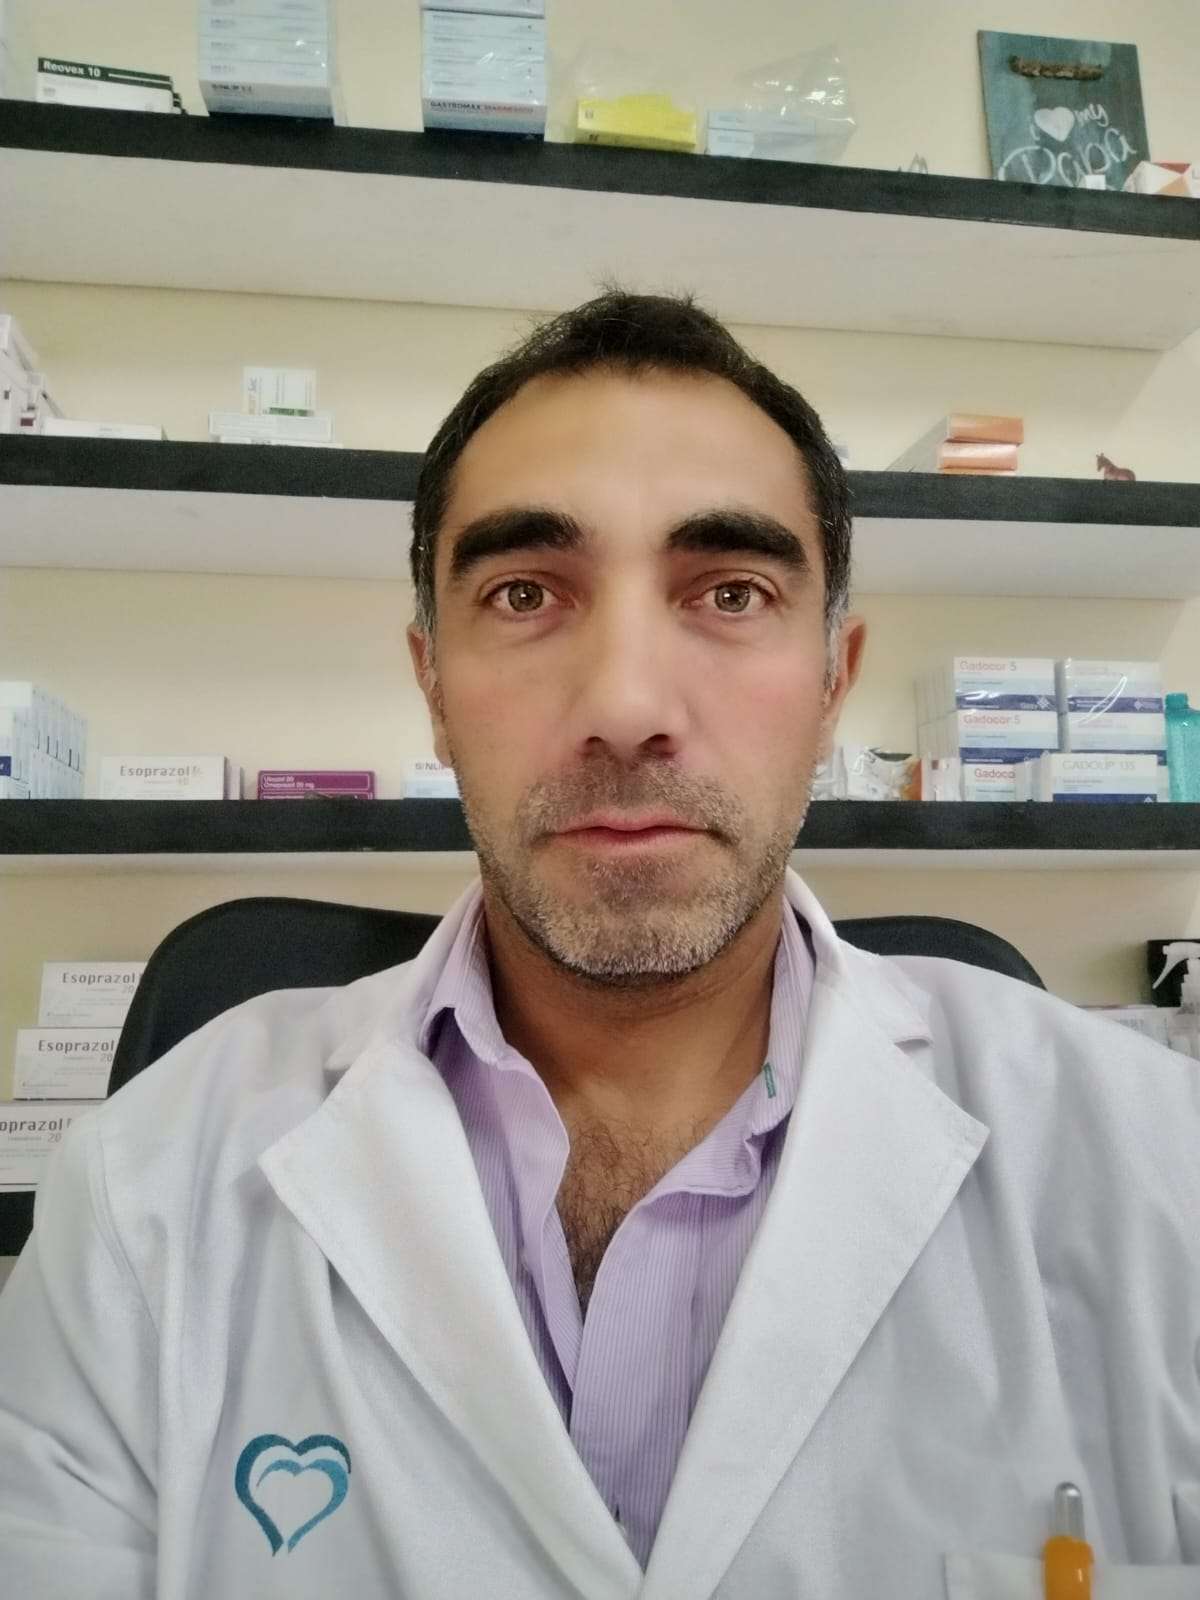 Dr. Andrés Irigoyen
Hablemos de la prevención del cáncer colorrectal